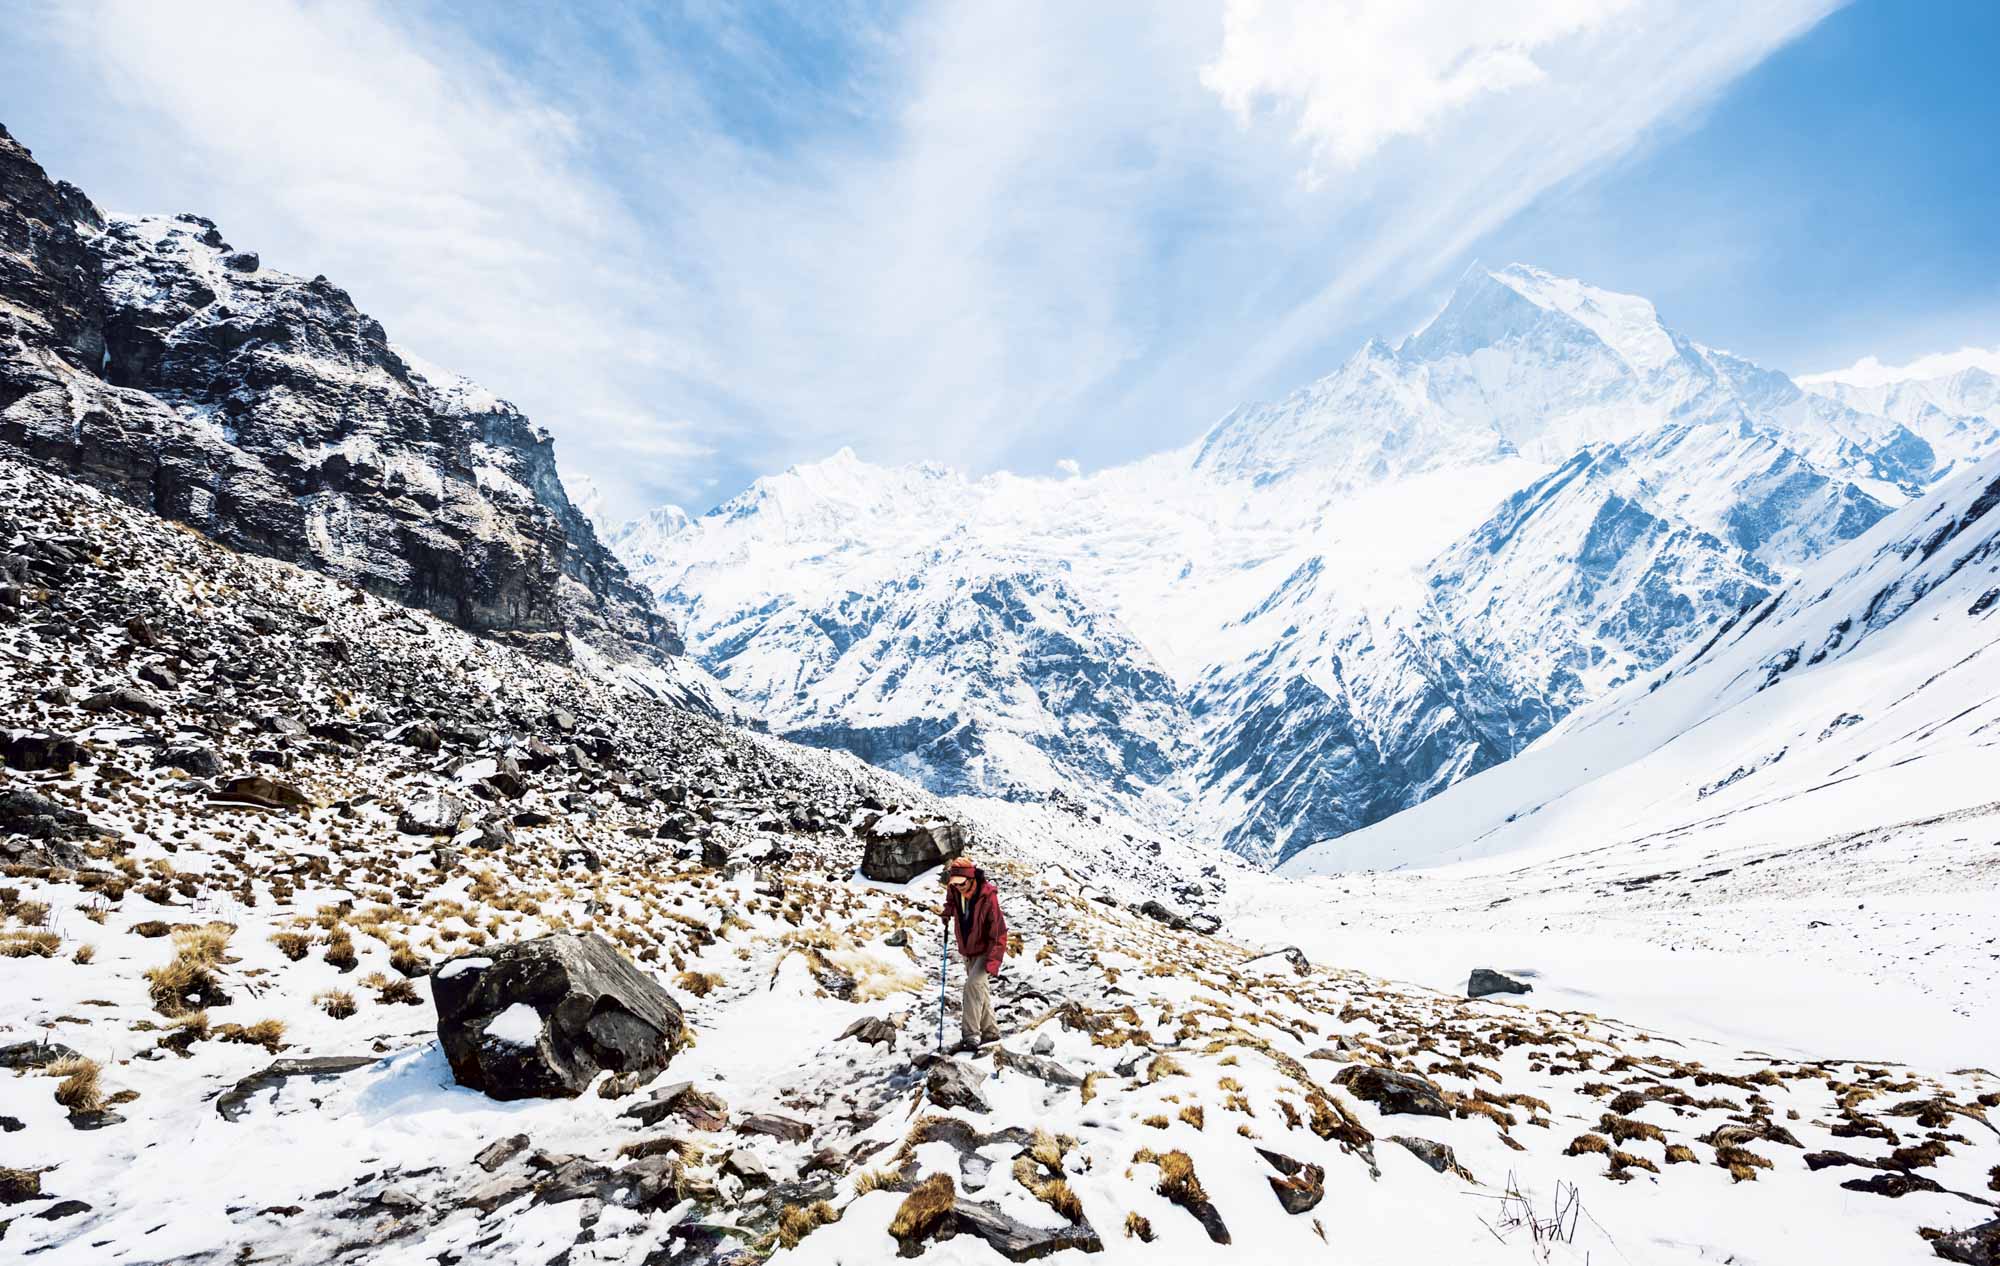 Trekking the Annapurna Massif in Nepal